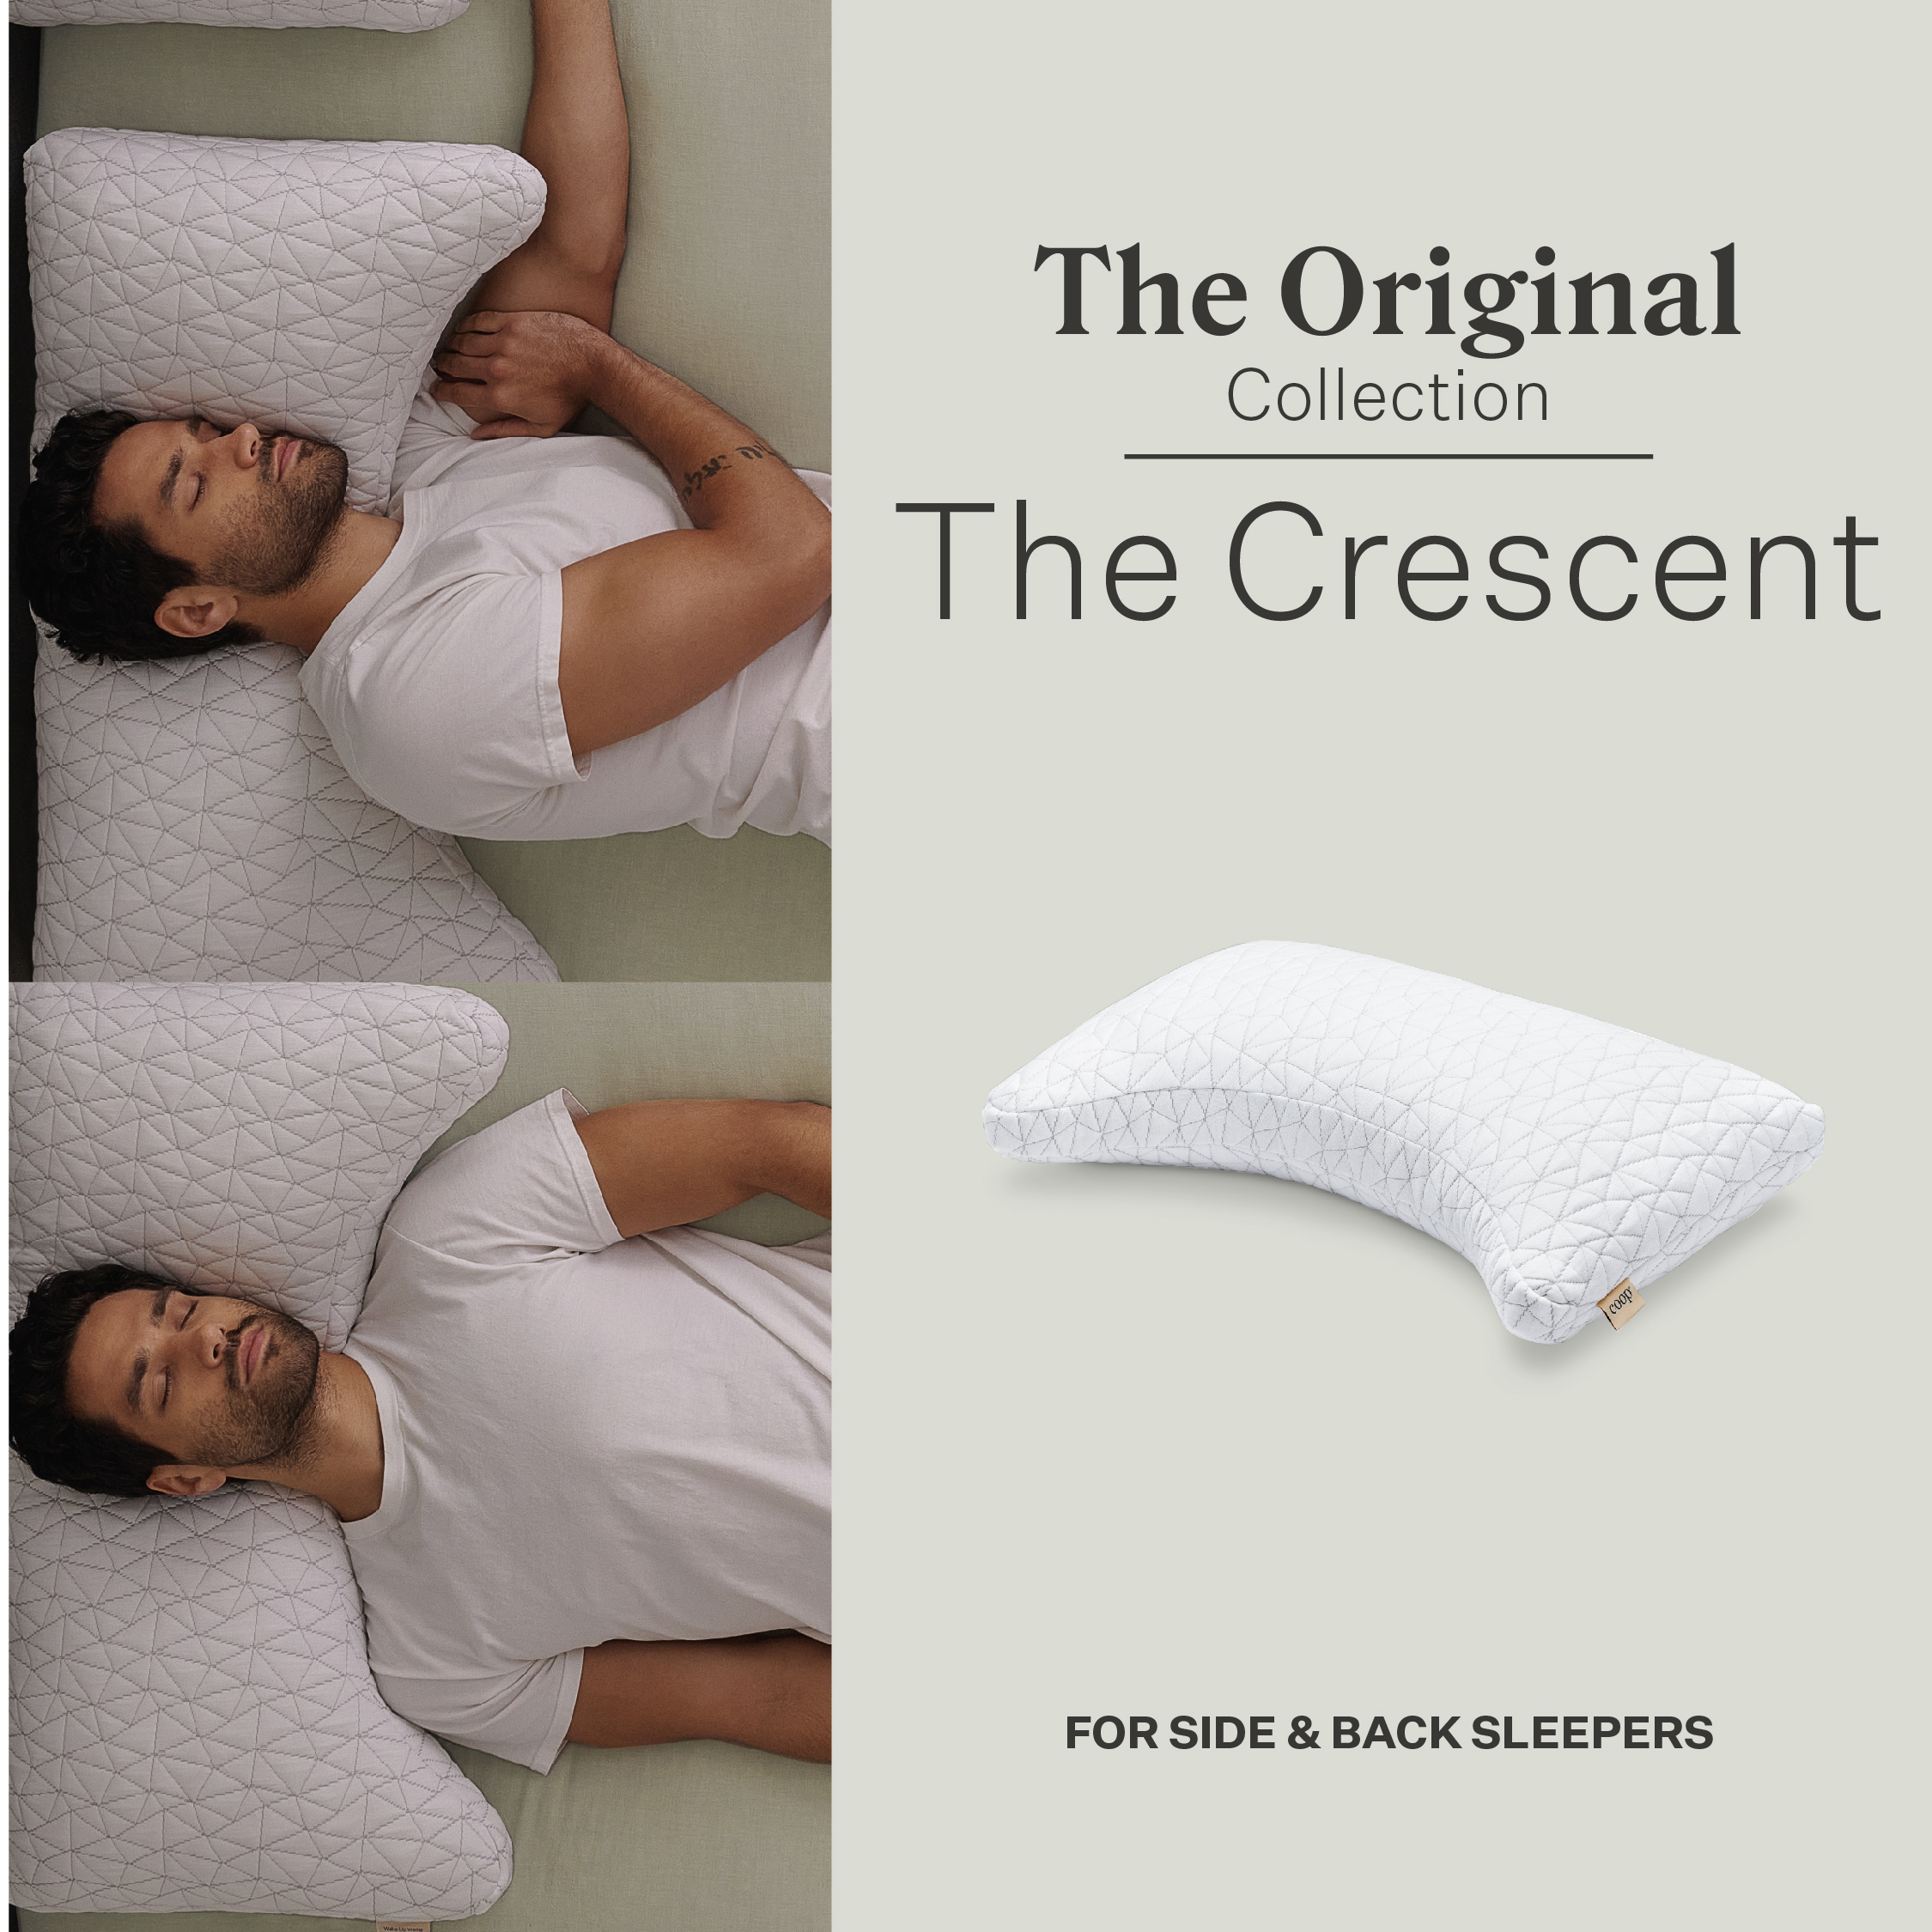 Coop Sleep Goods The Original Adjustable Pillow